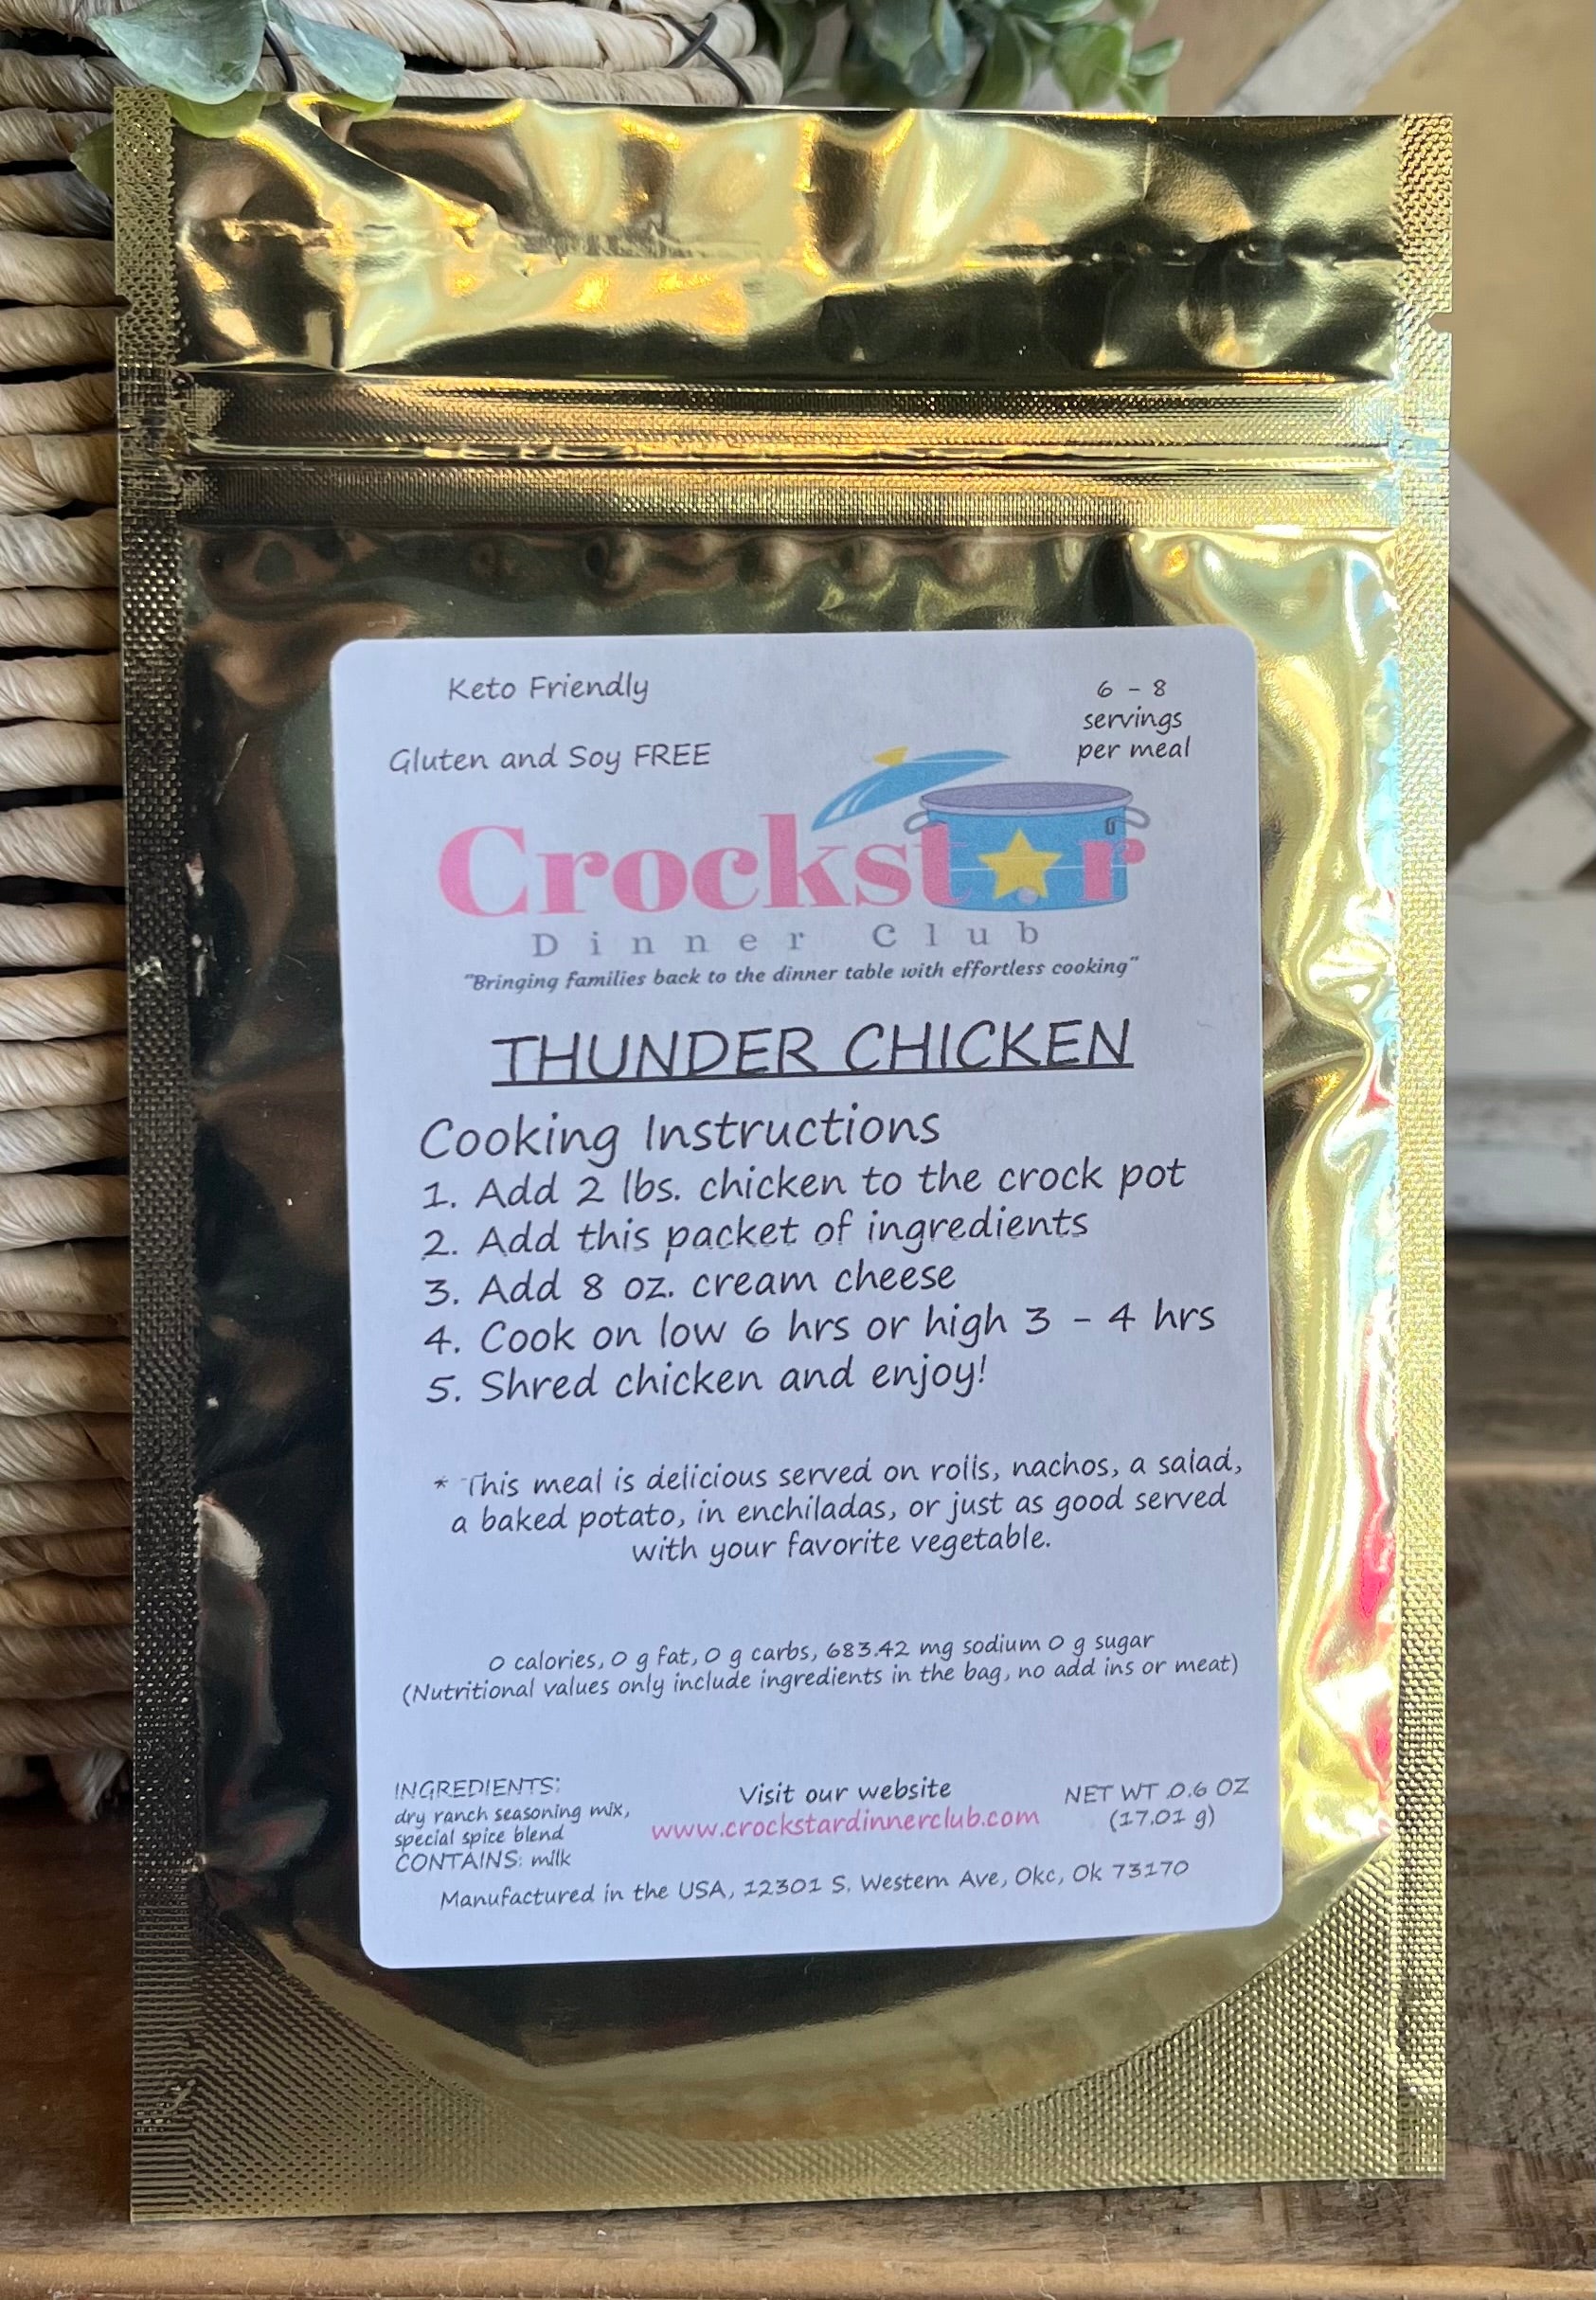 Crockstar Dinner Club - Thunder Chicken